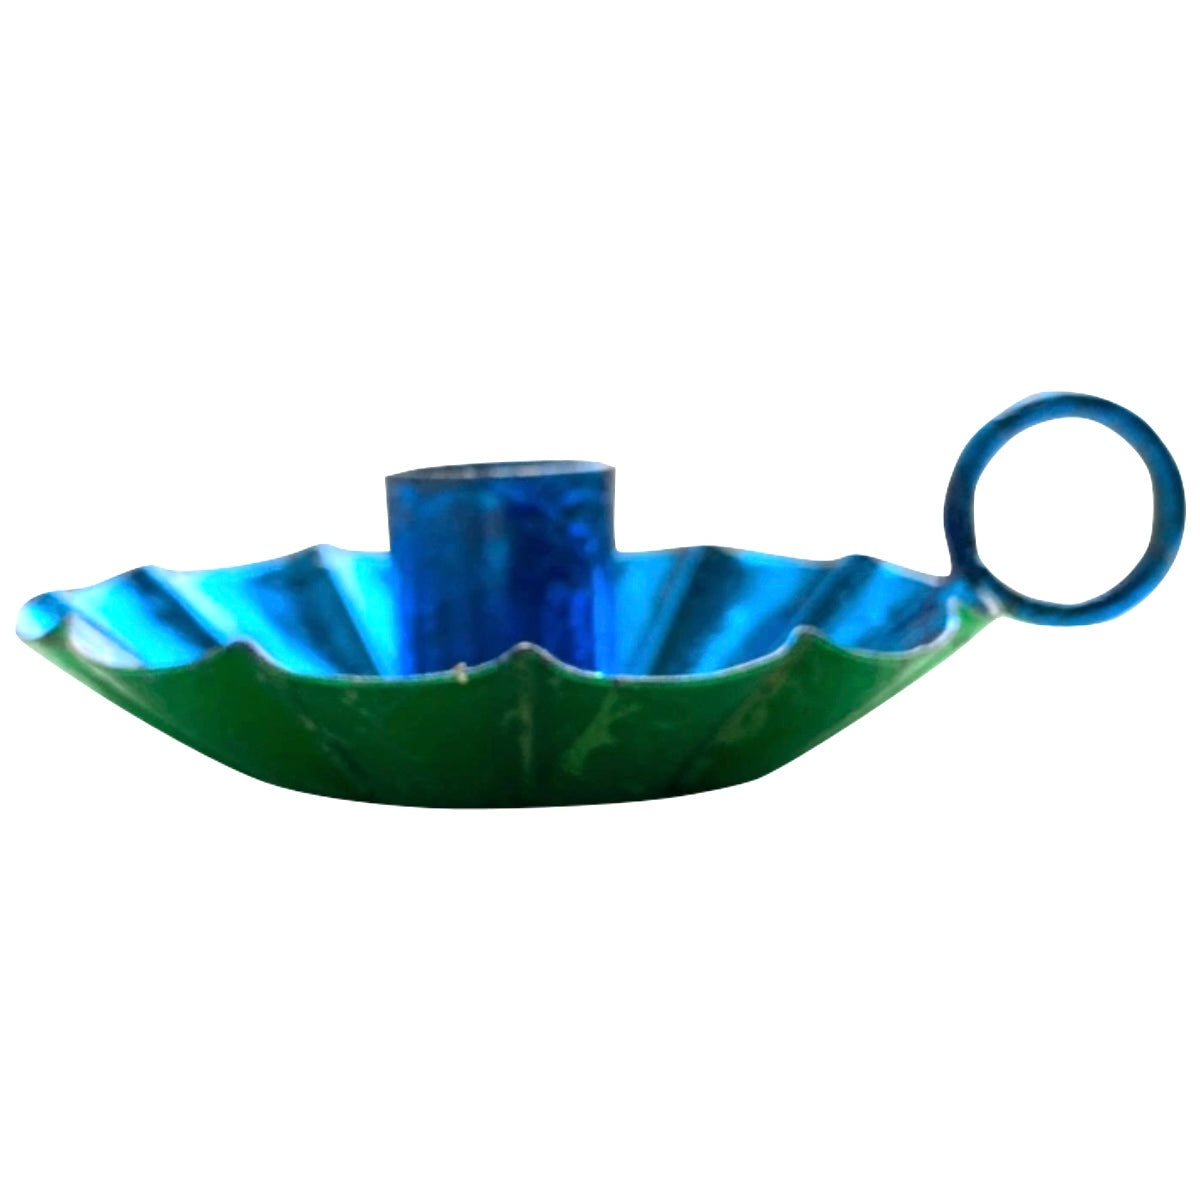 Kandelaar Flower kobalt blauw/groen metallic maat S